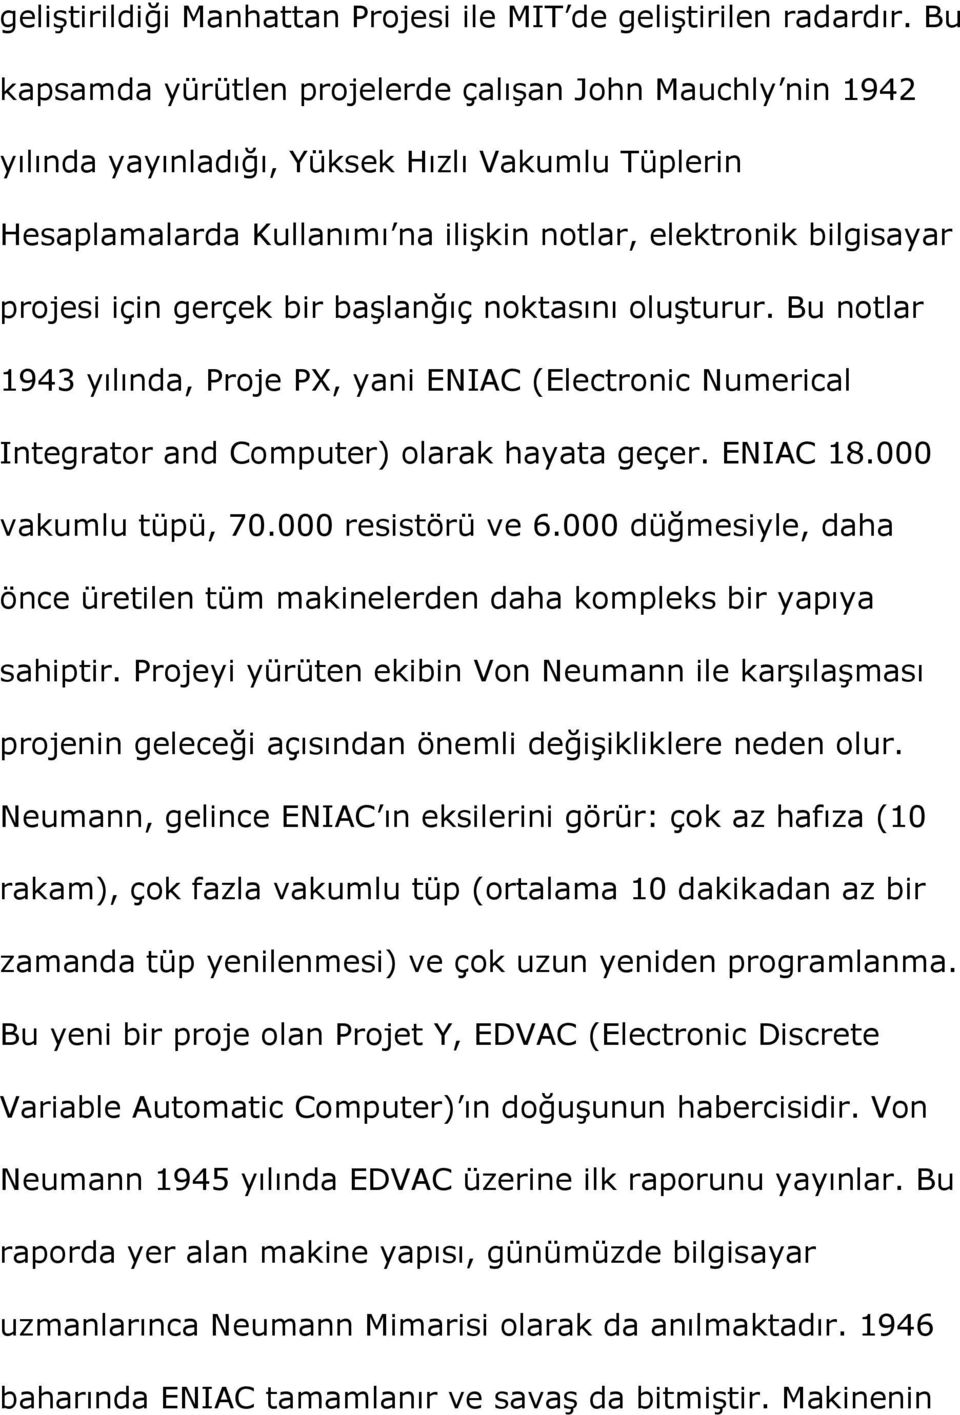 bir başlanğıç noktasını oluşturur. Bu notlar 1943 yılında, Proje PX, yani ENIAC (Electronic Numerical Integrator and Computer) olarak hayata geçer. ENIAC 18.000 vakumlu tüpü, 70.000 resistörü ve 6.